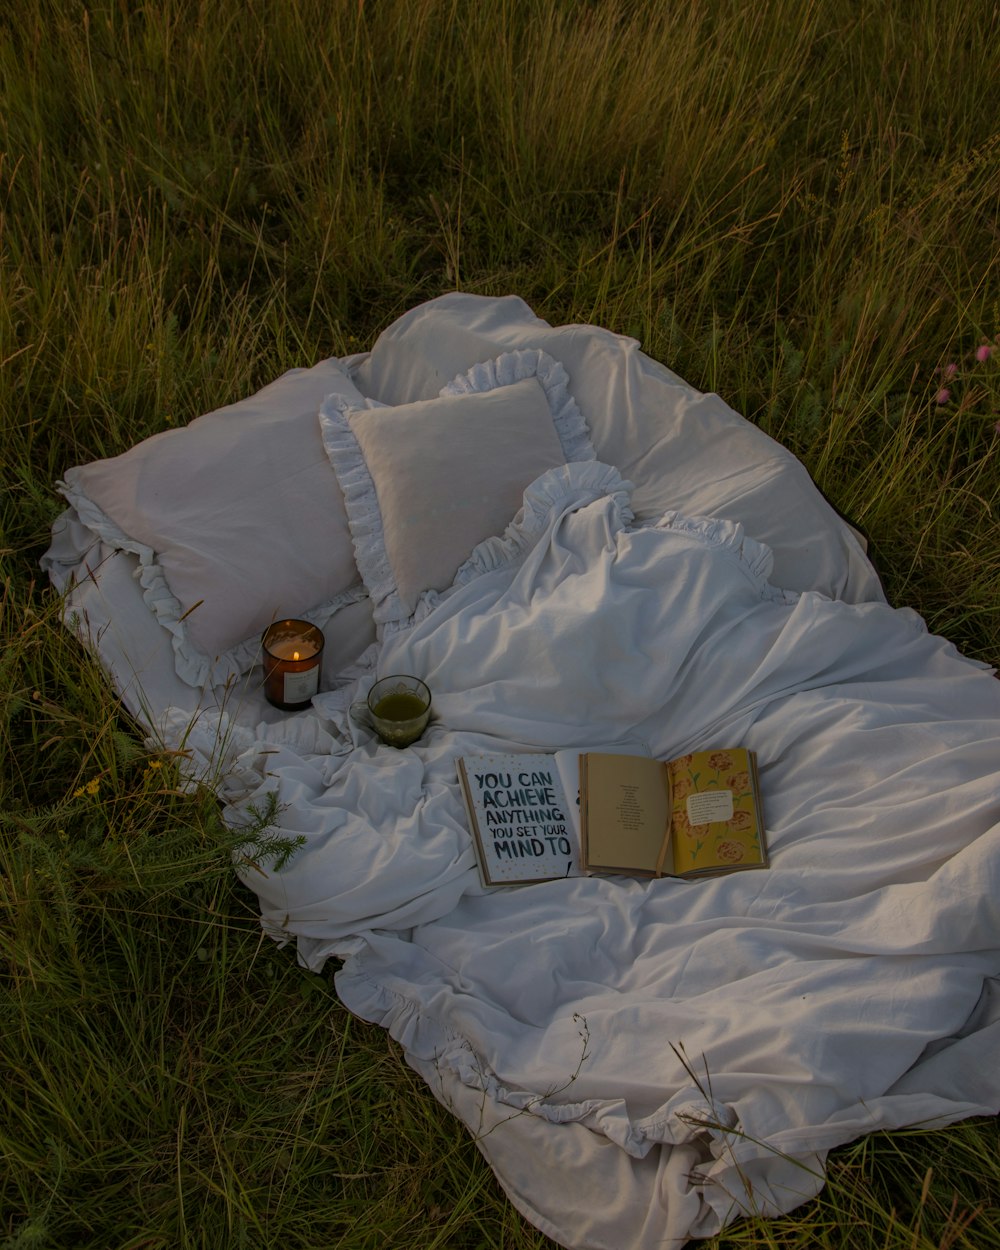 un libro y unas velas sobre una manta en la hierba